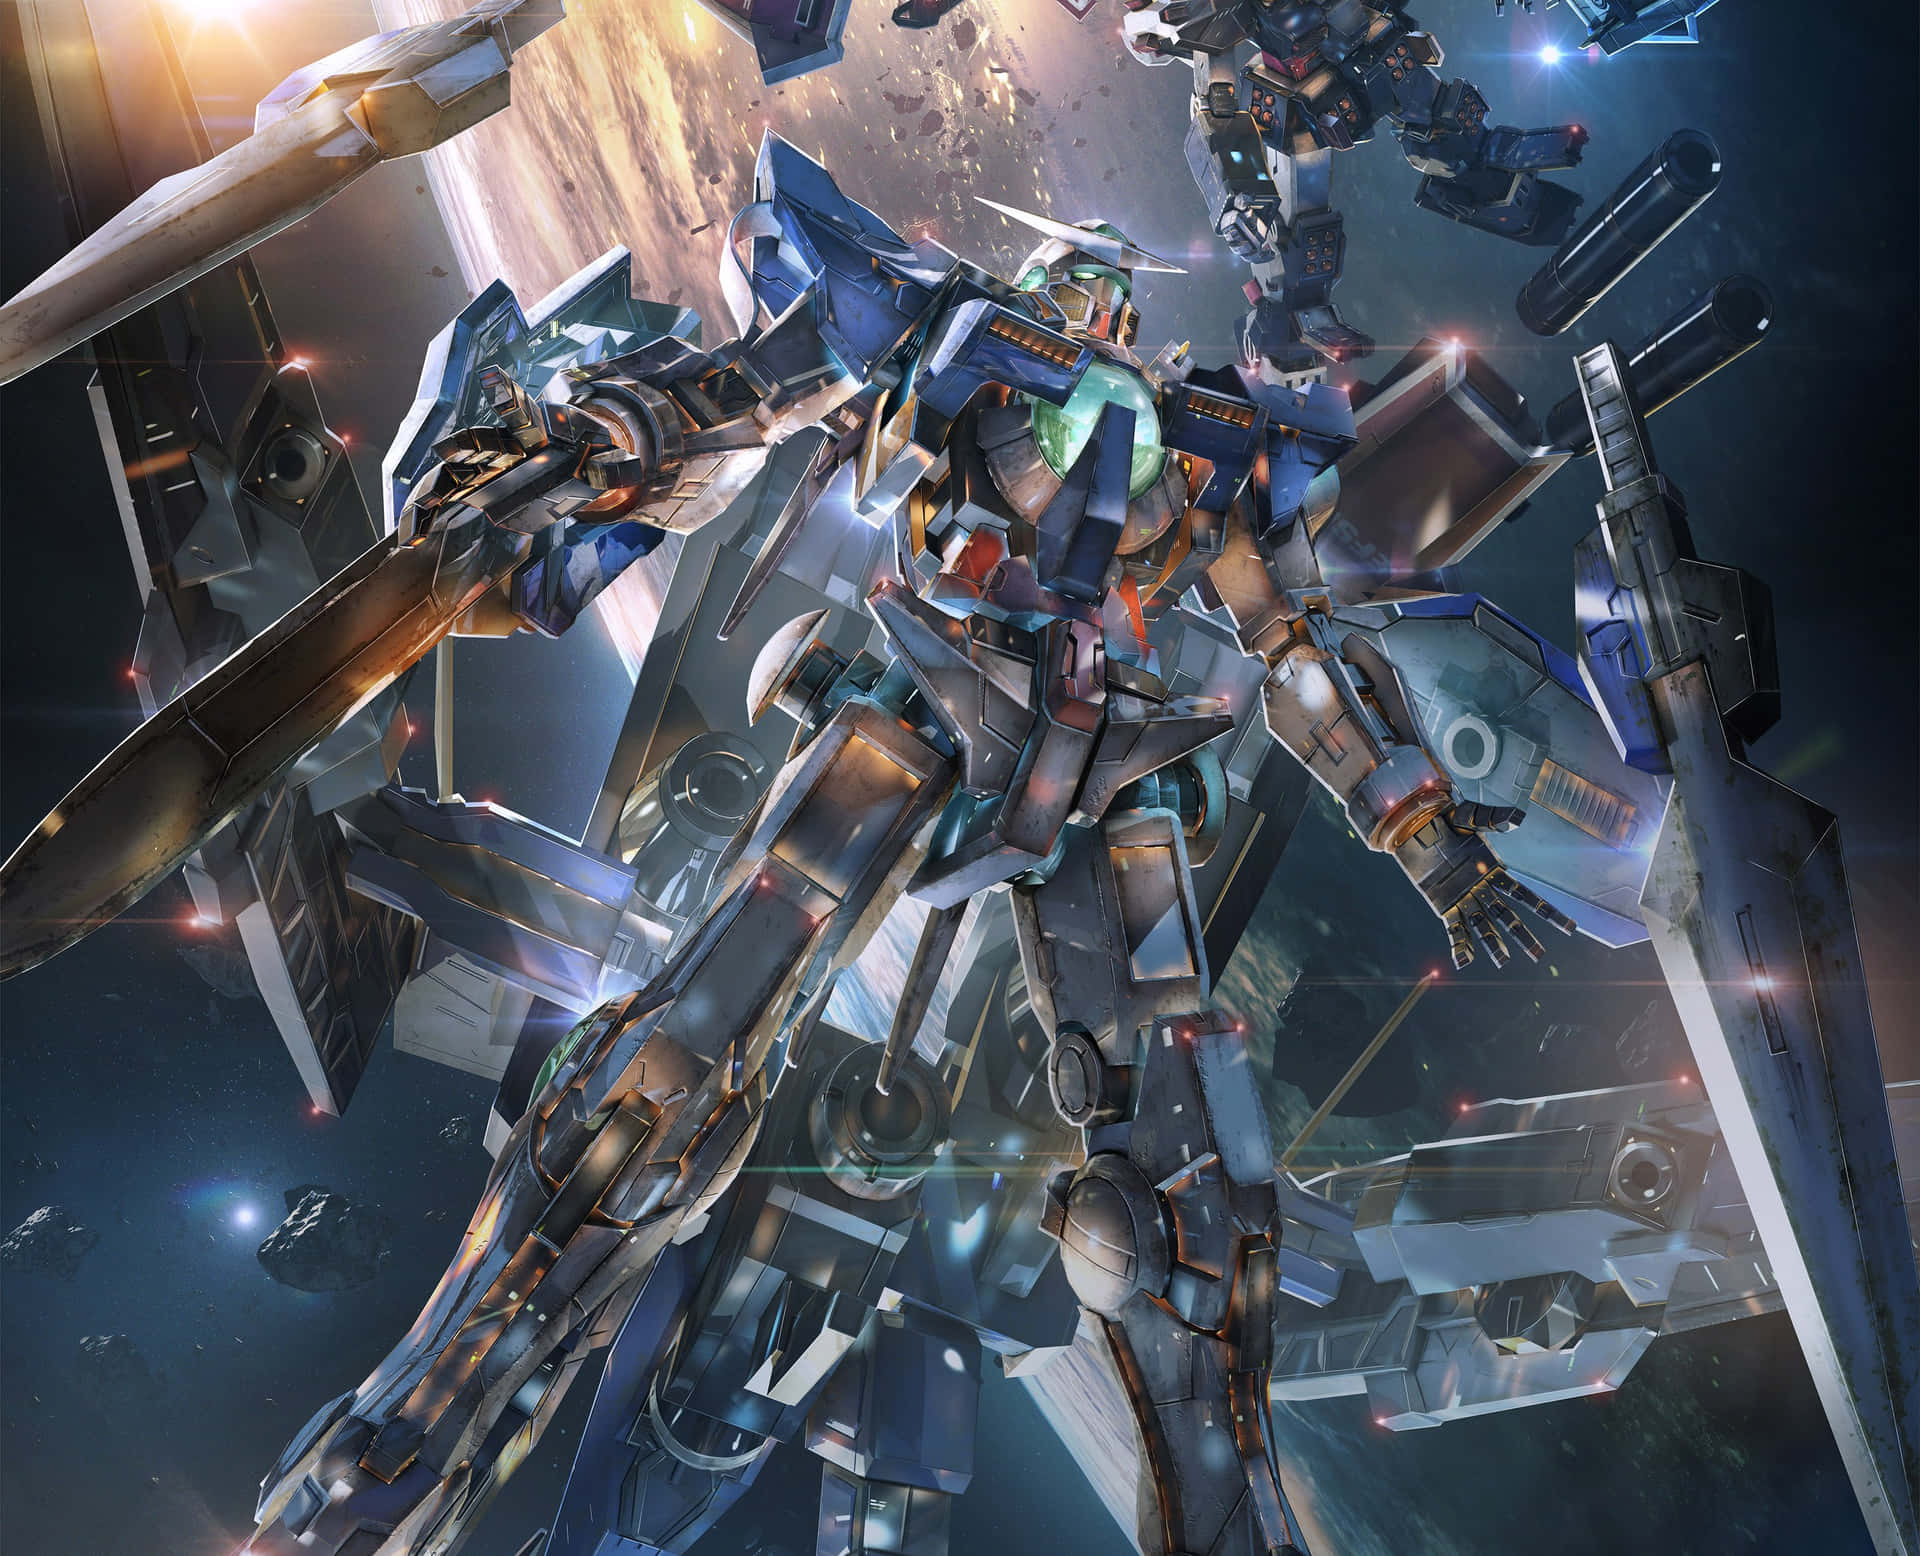 Machdich Bereit Für Action! Stell Dich Auf Den Krieg Ein Mit Diesem Beeindruckenden Gundam-bild.